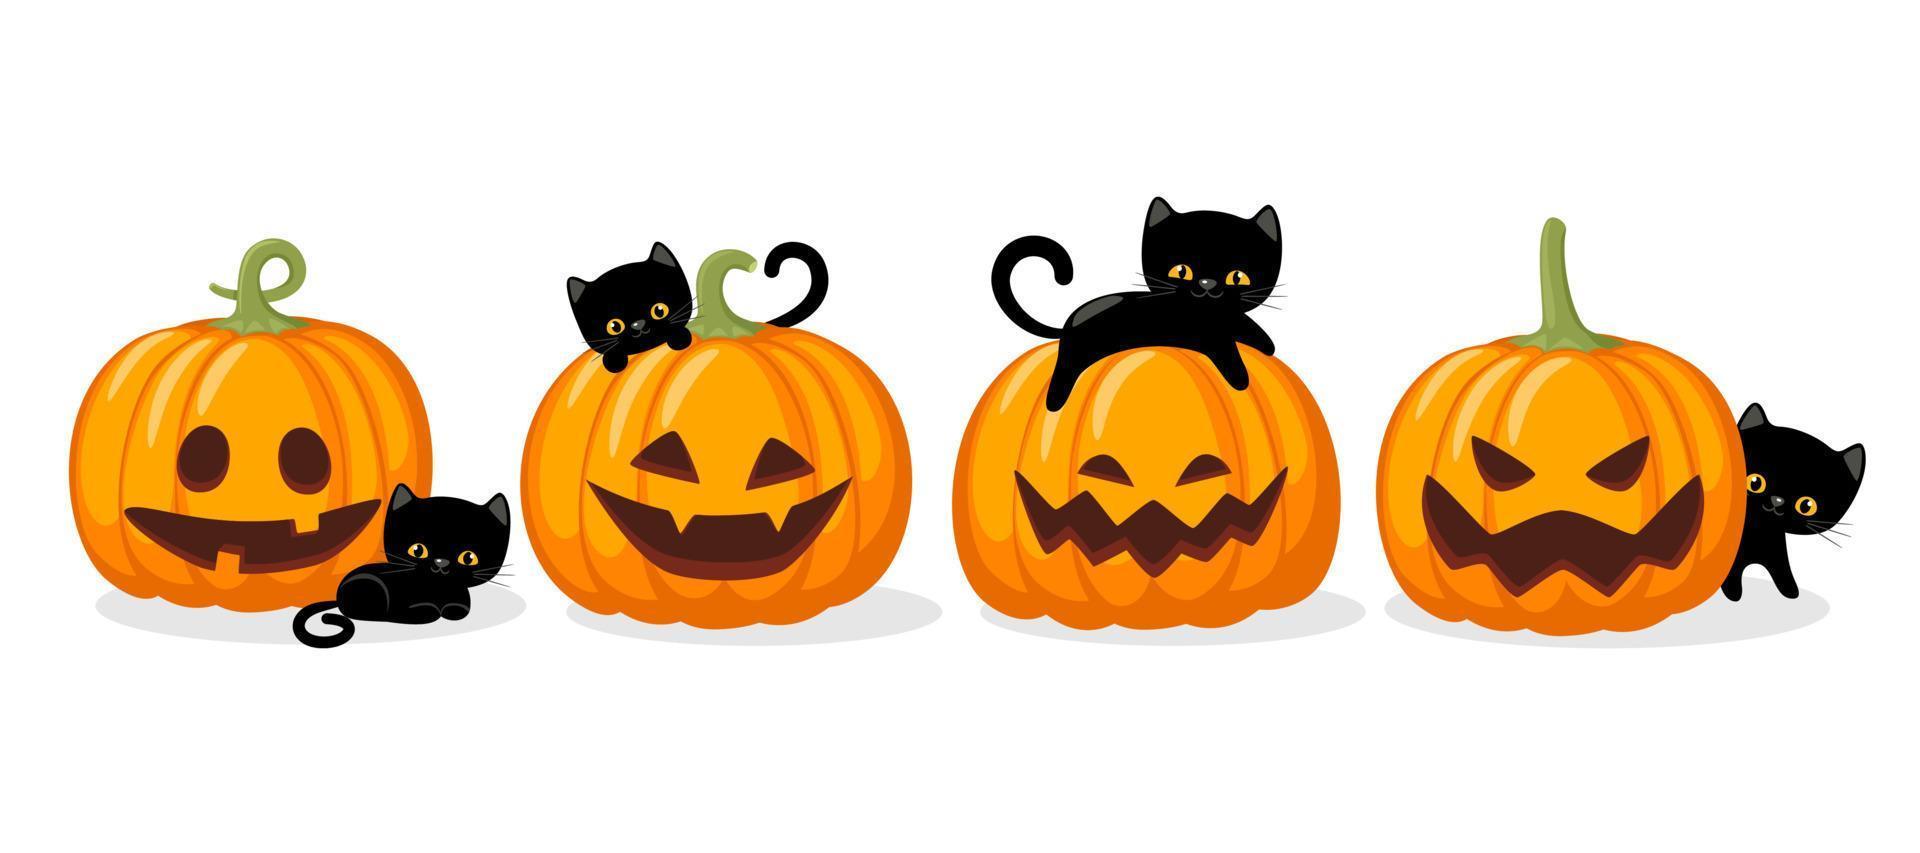 abóboras de halloween com gatos pretos. abóbora assustadora com sorriso. ilustração vetorial isolada no fundo branco. conceito de halloween e outono. vetor